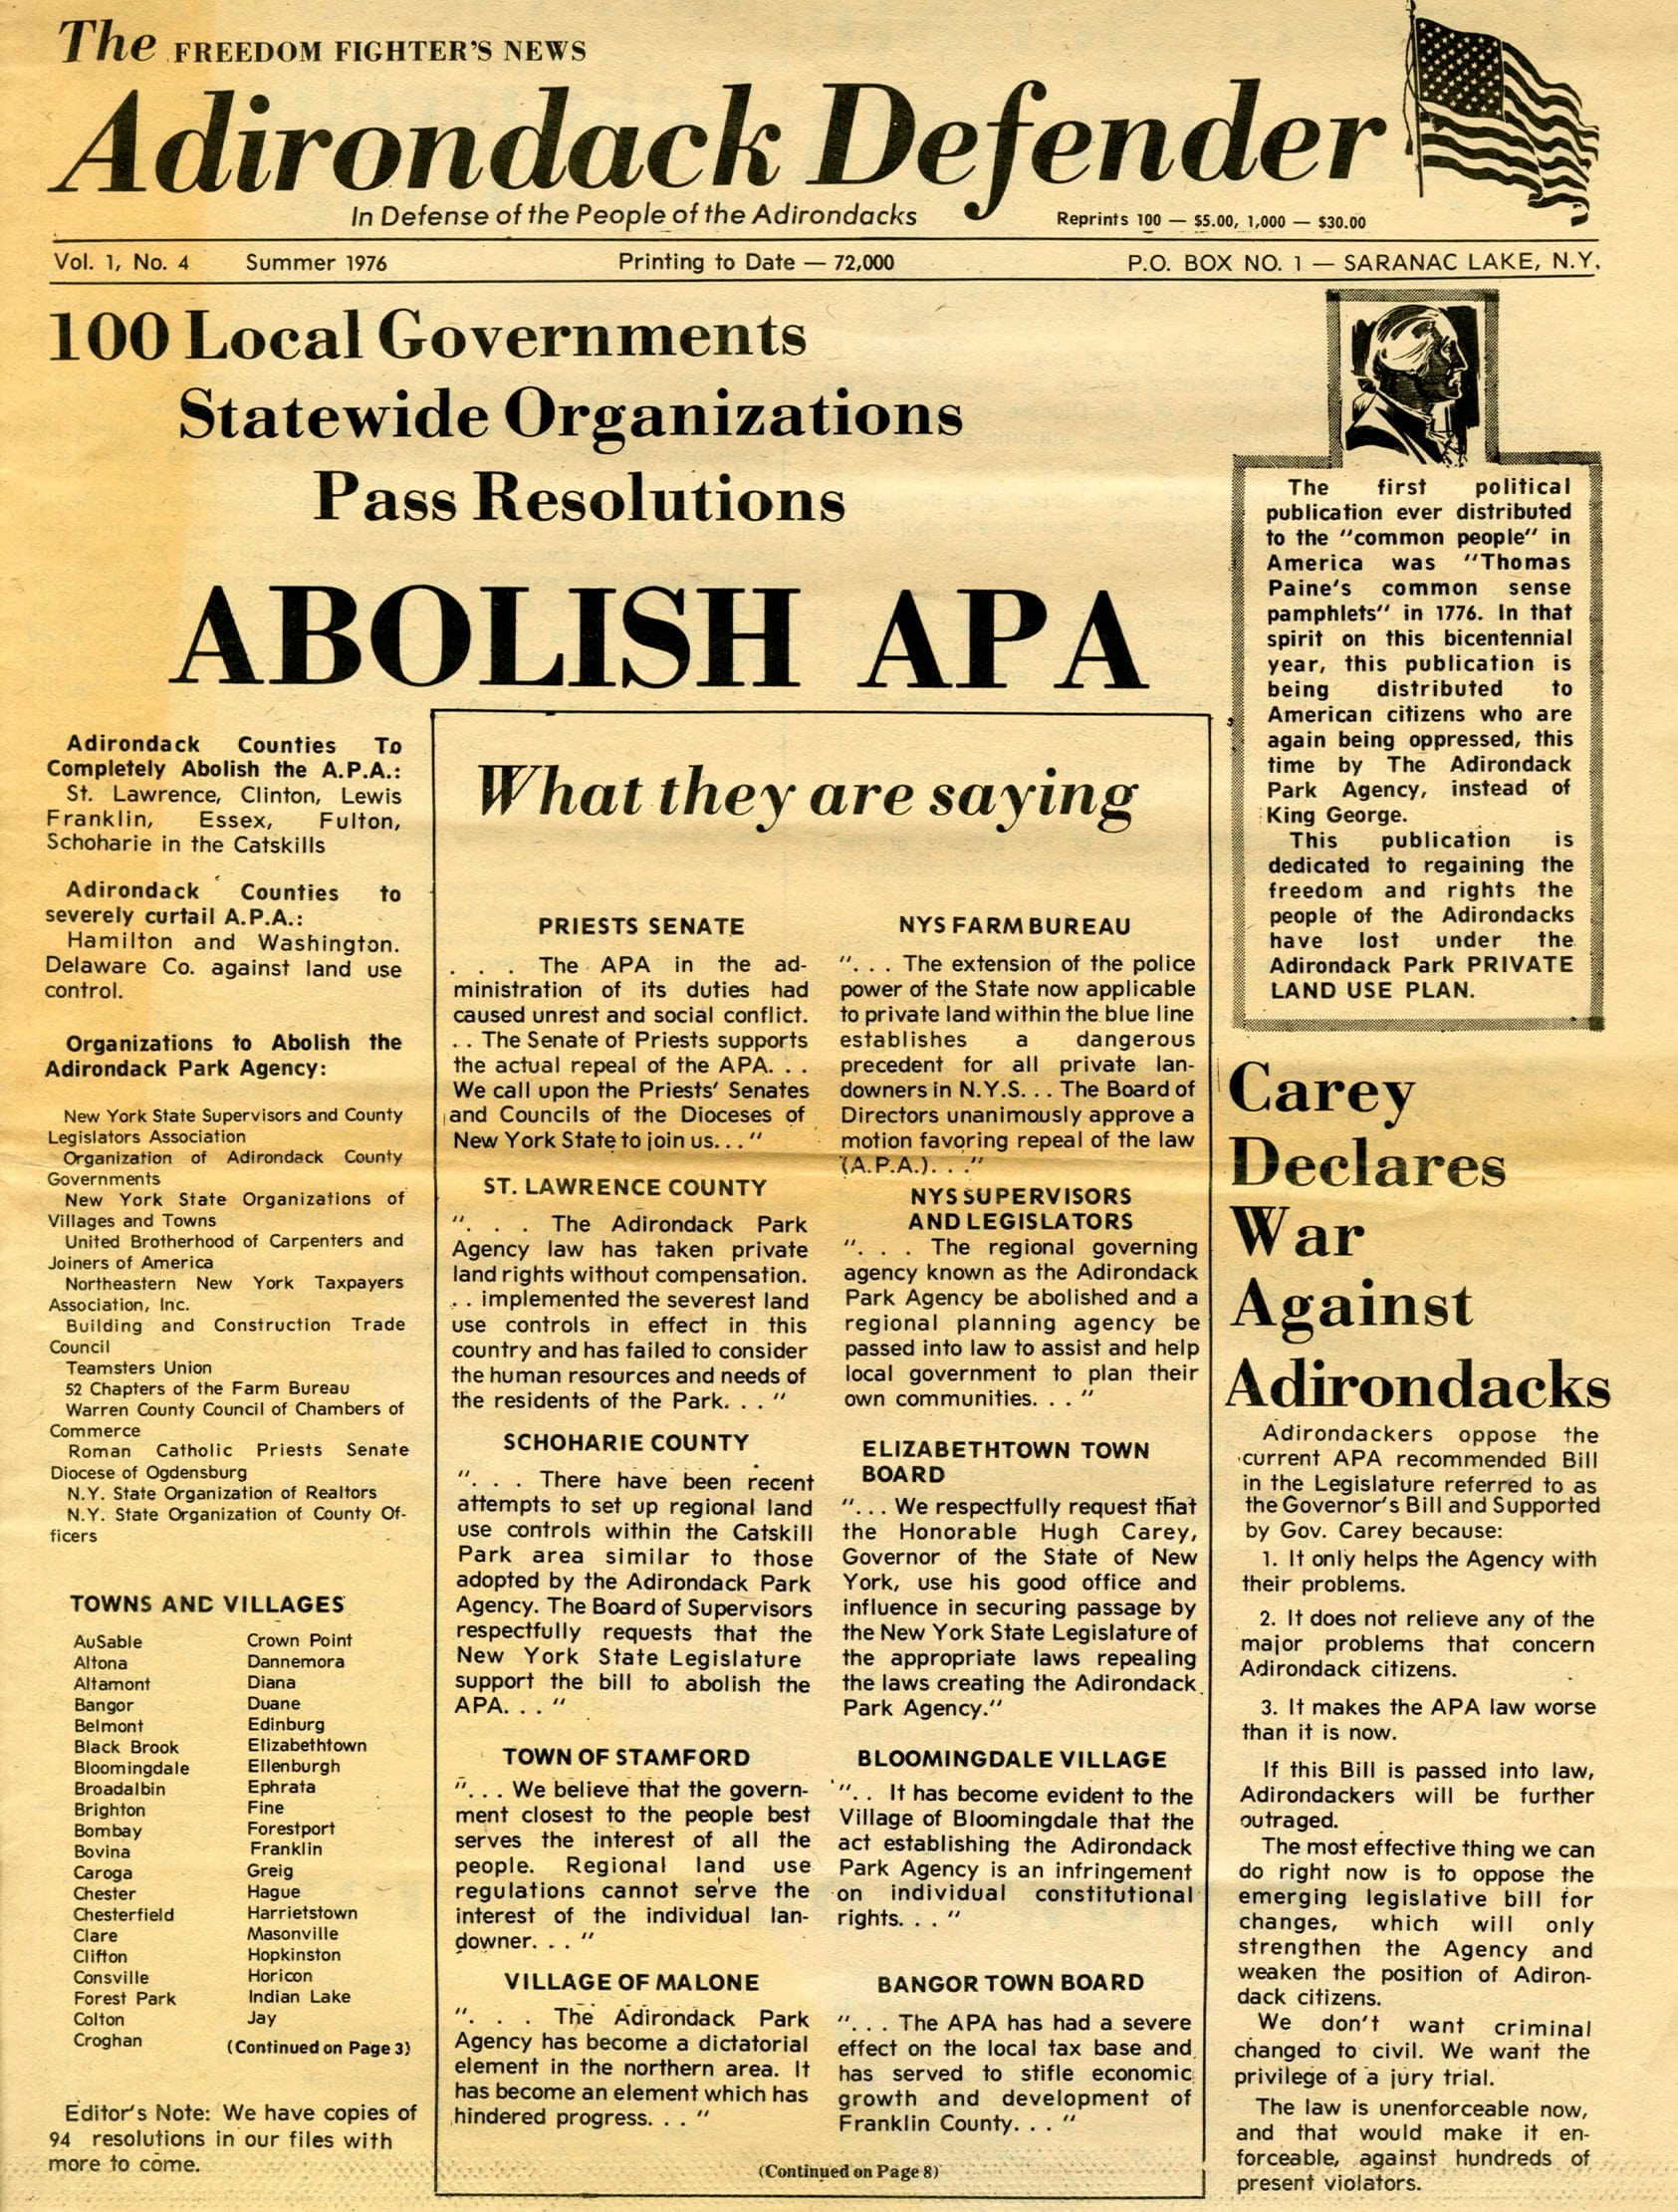 Première page du journal Adirondack Defender de l'été 1976.